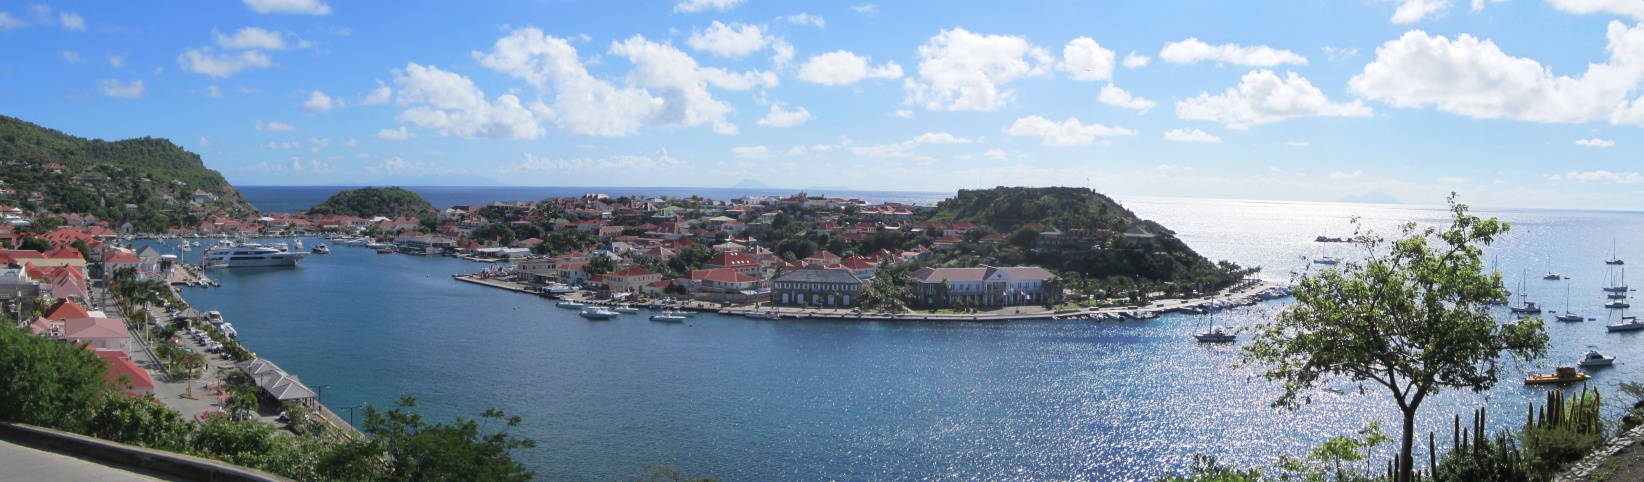 Der pitoreske Naturhafen von Gustavia - noch fehlt die Flotte der Megayachten